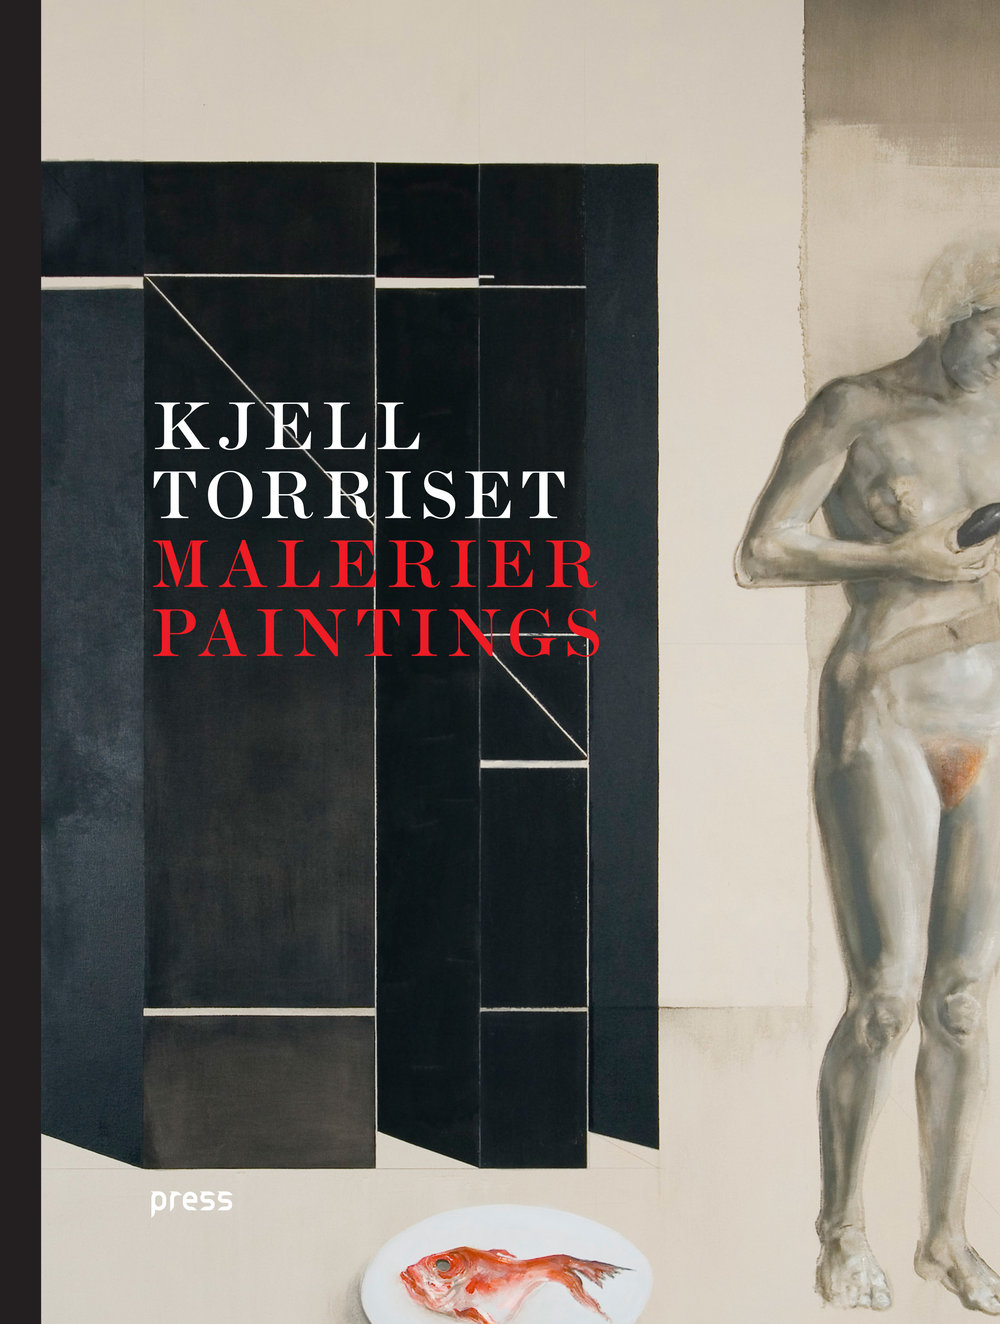 Kjell Torriset - Malerier - Paintings